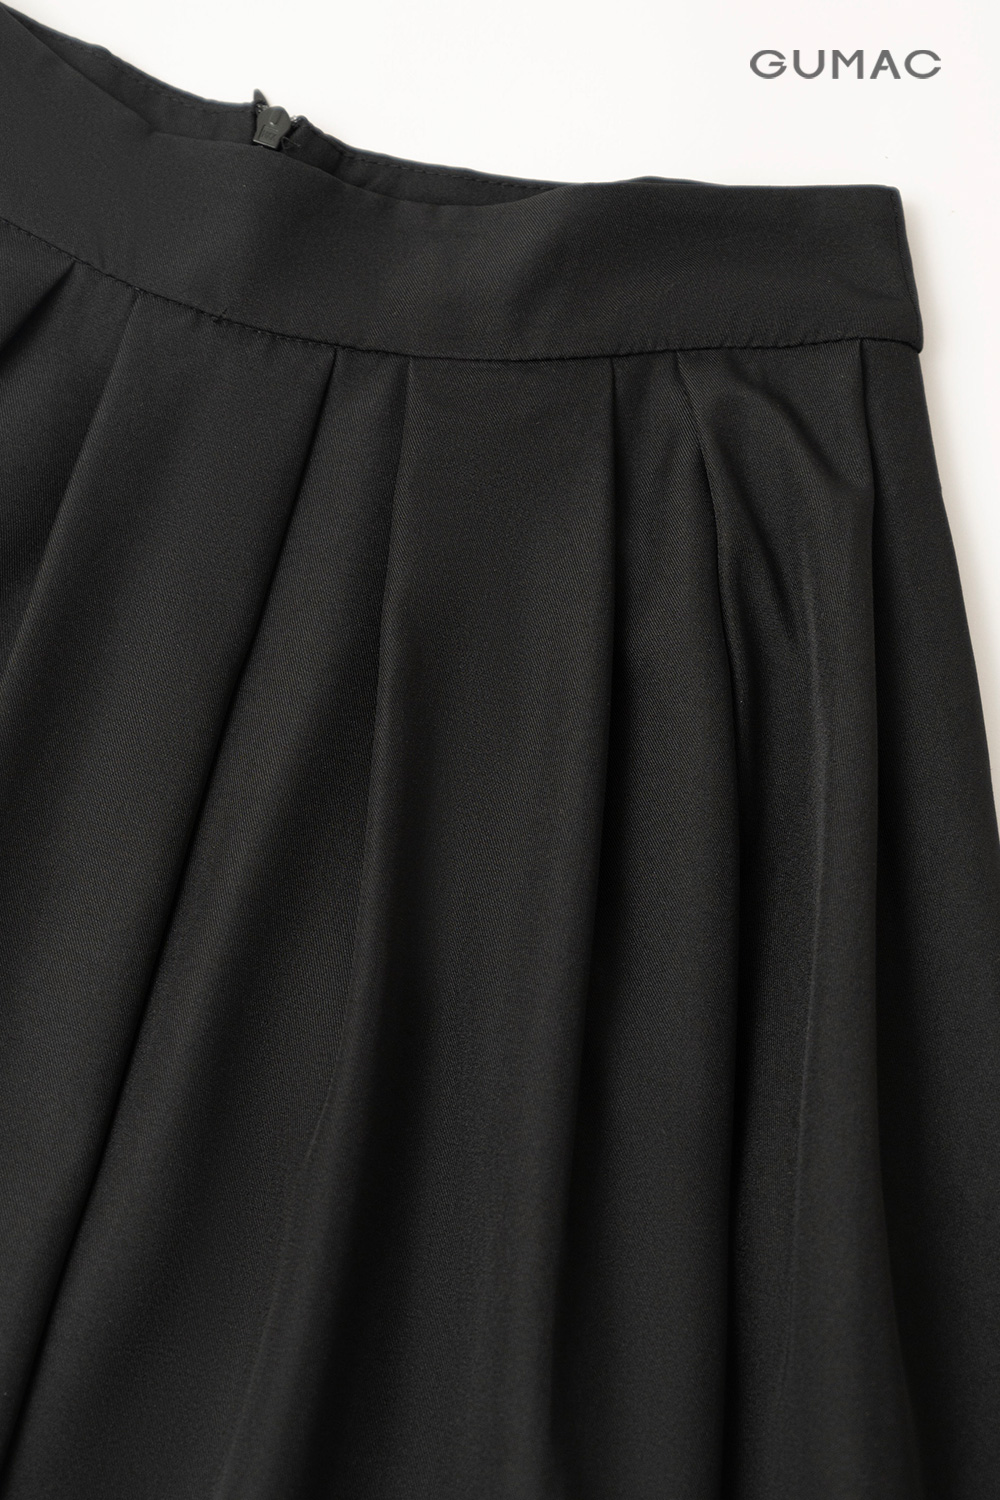 Chân váy xếp ly 3 tầng màu đen – Authentic Store